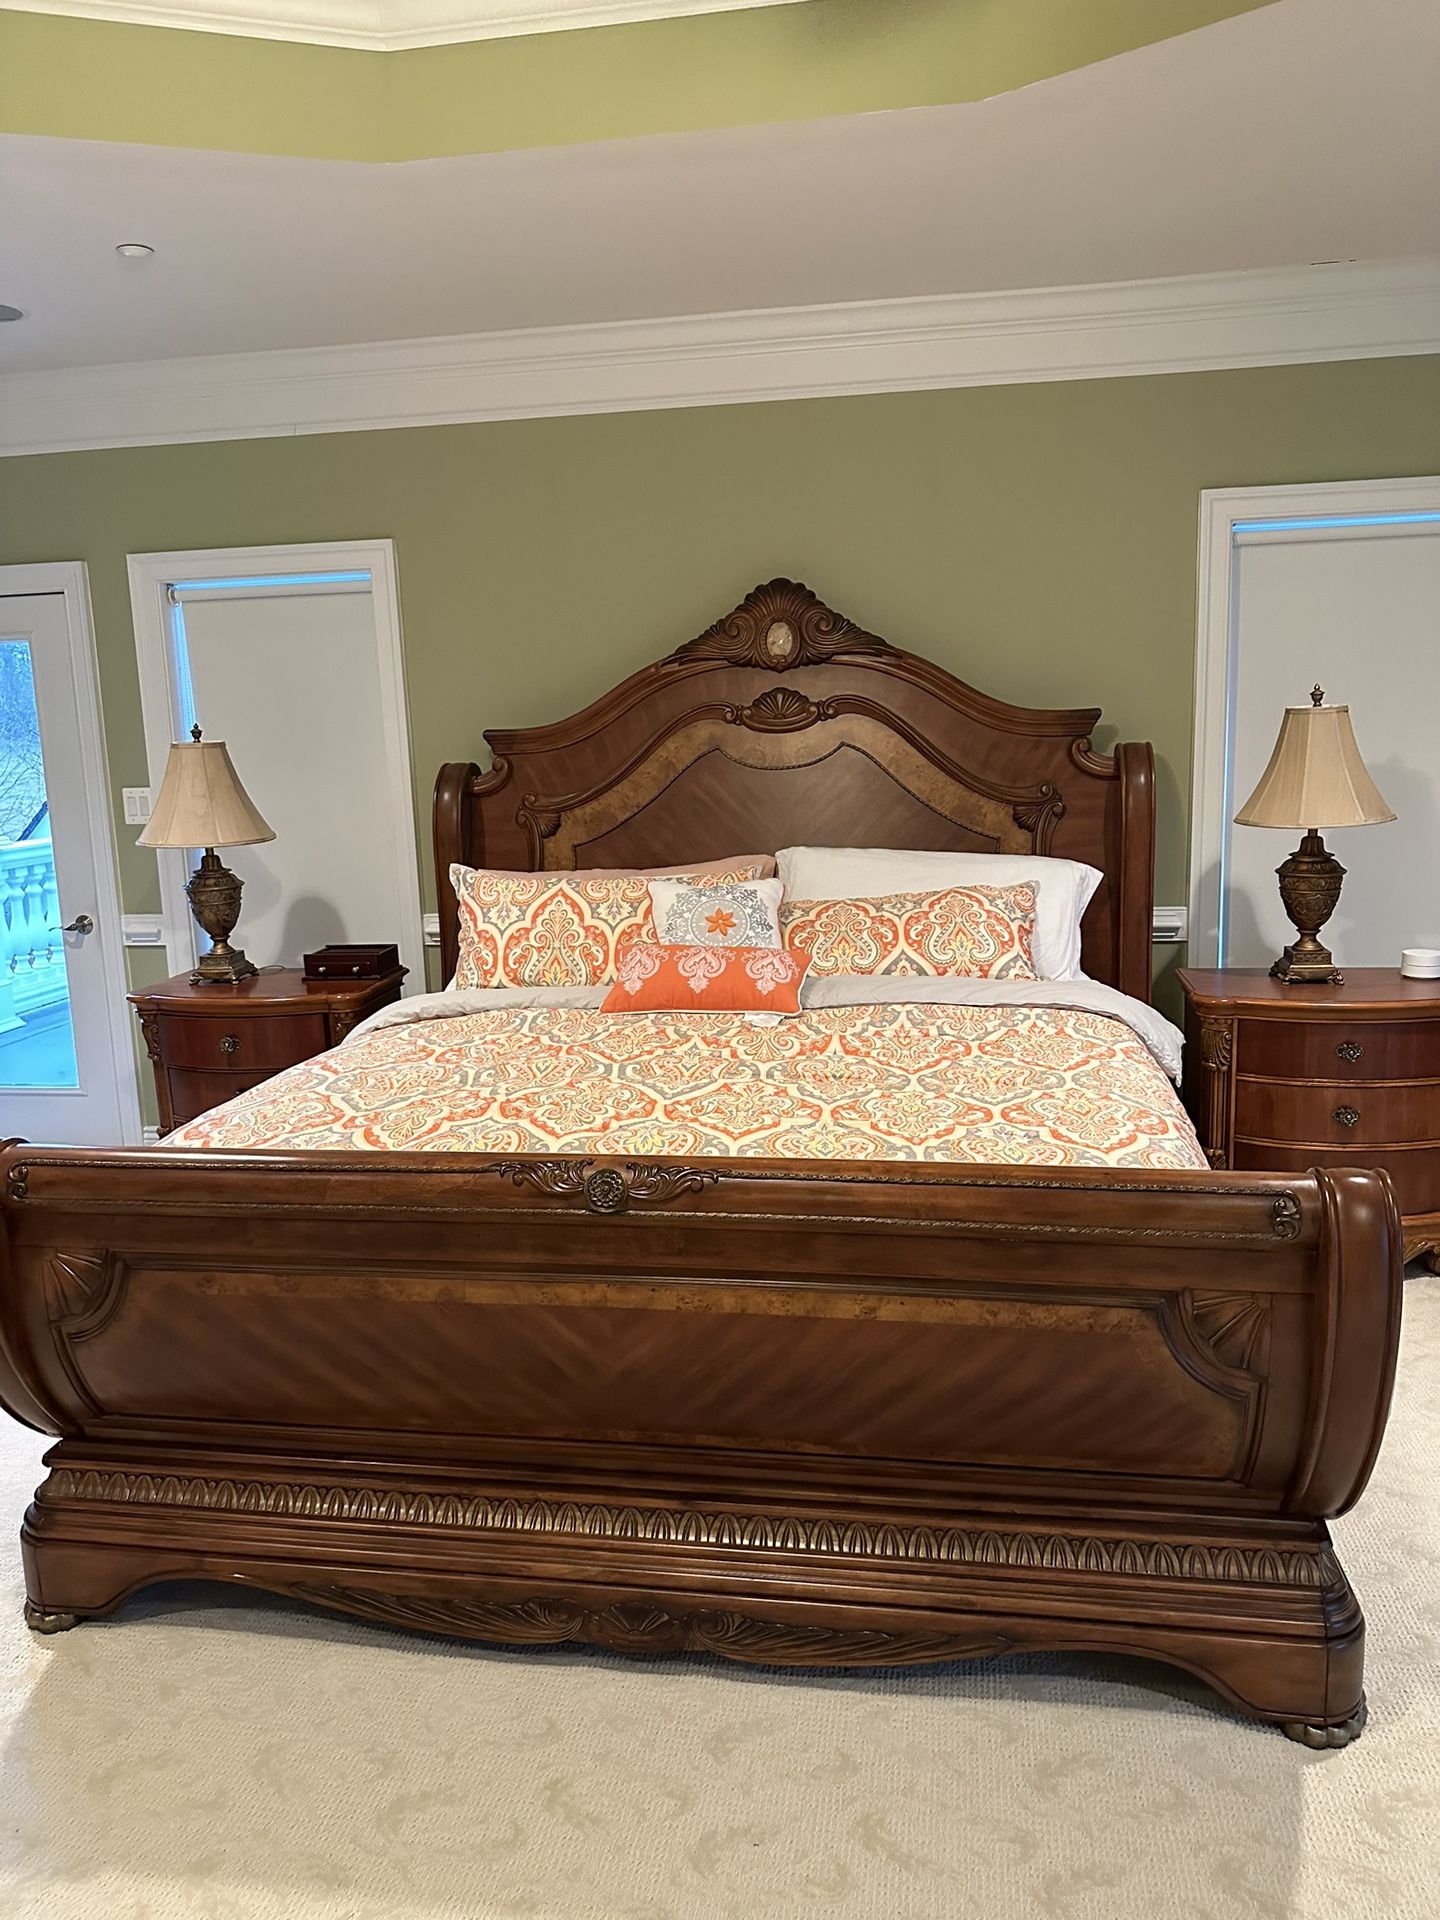 Master Bedroom Furniture Set